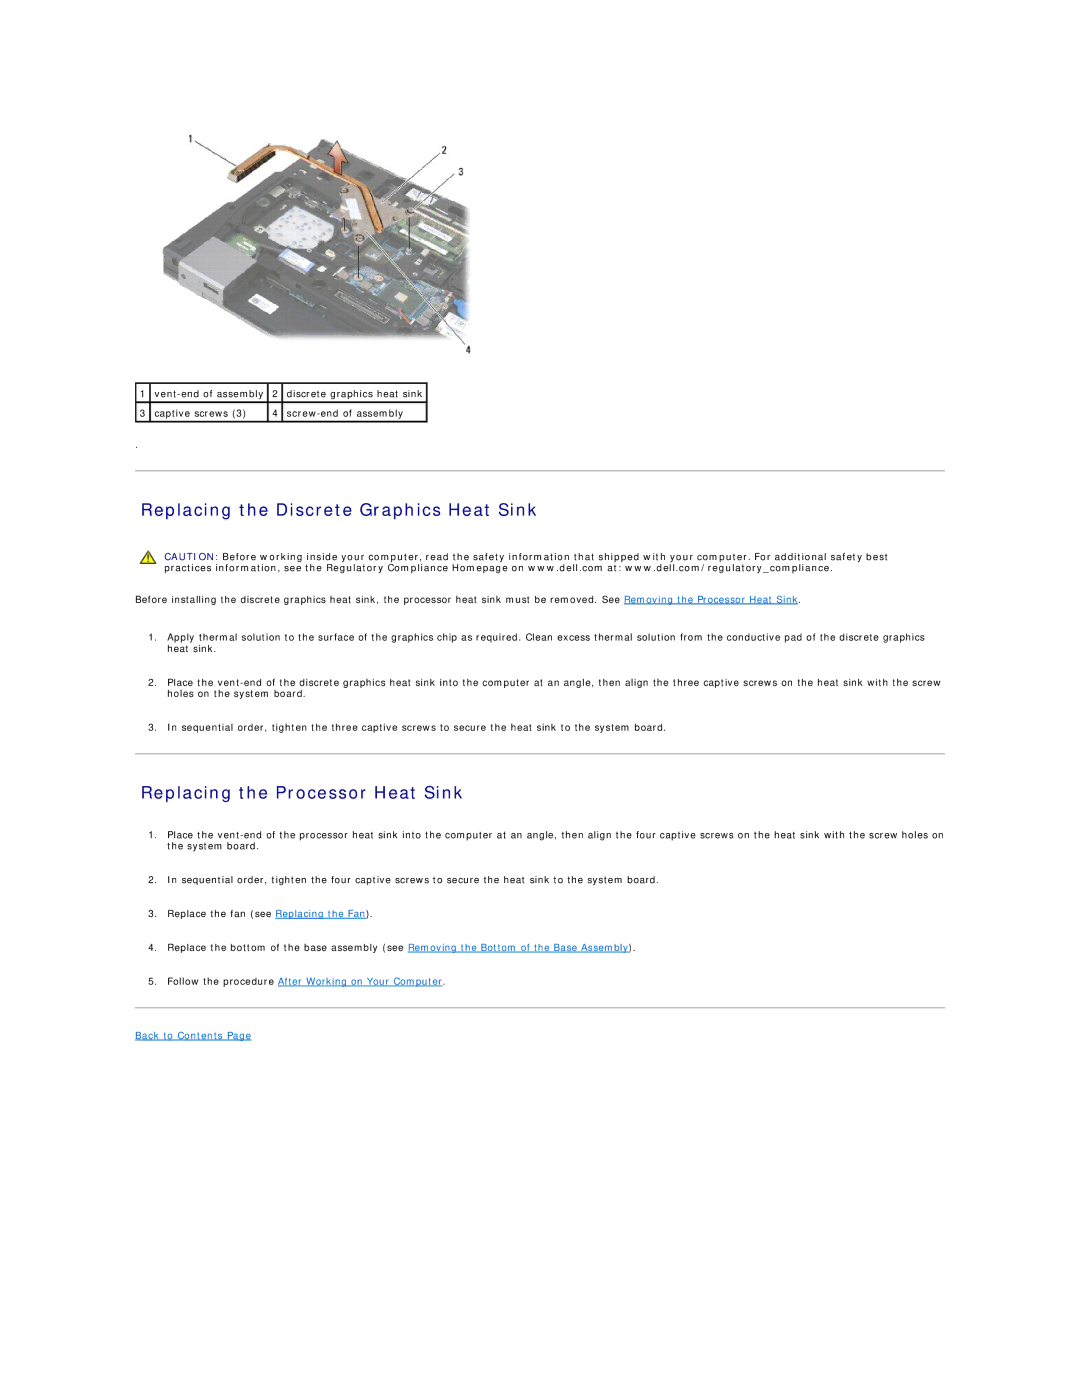 Dell PP30L manual Replacing the Discrete Graphics Heat Sink, Replacing the Processor Heat Sink 